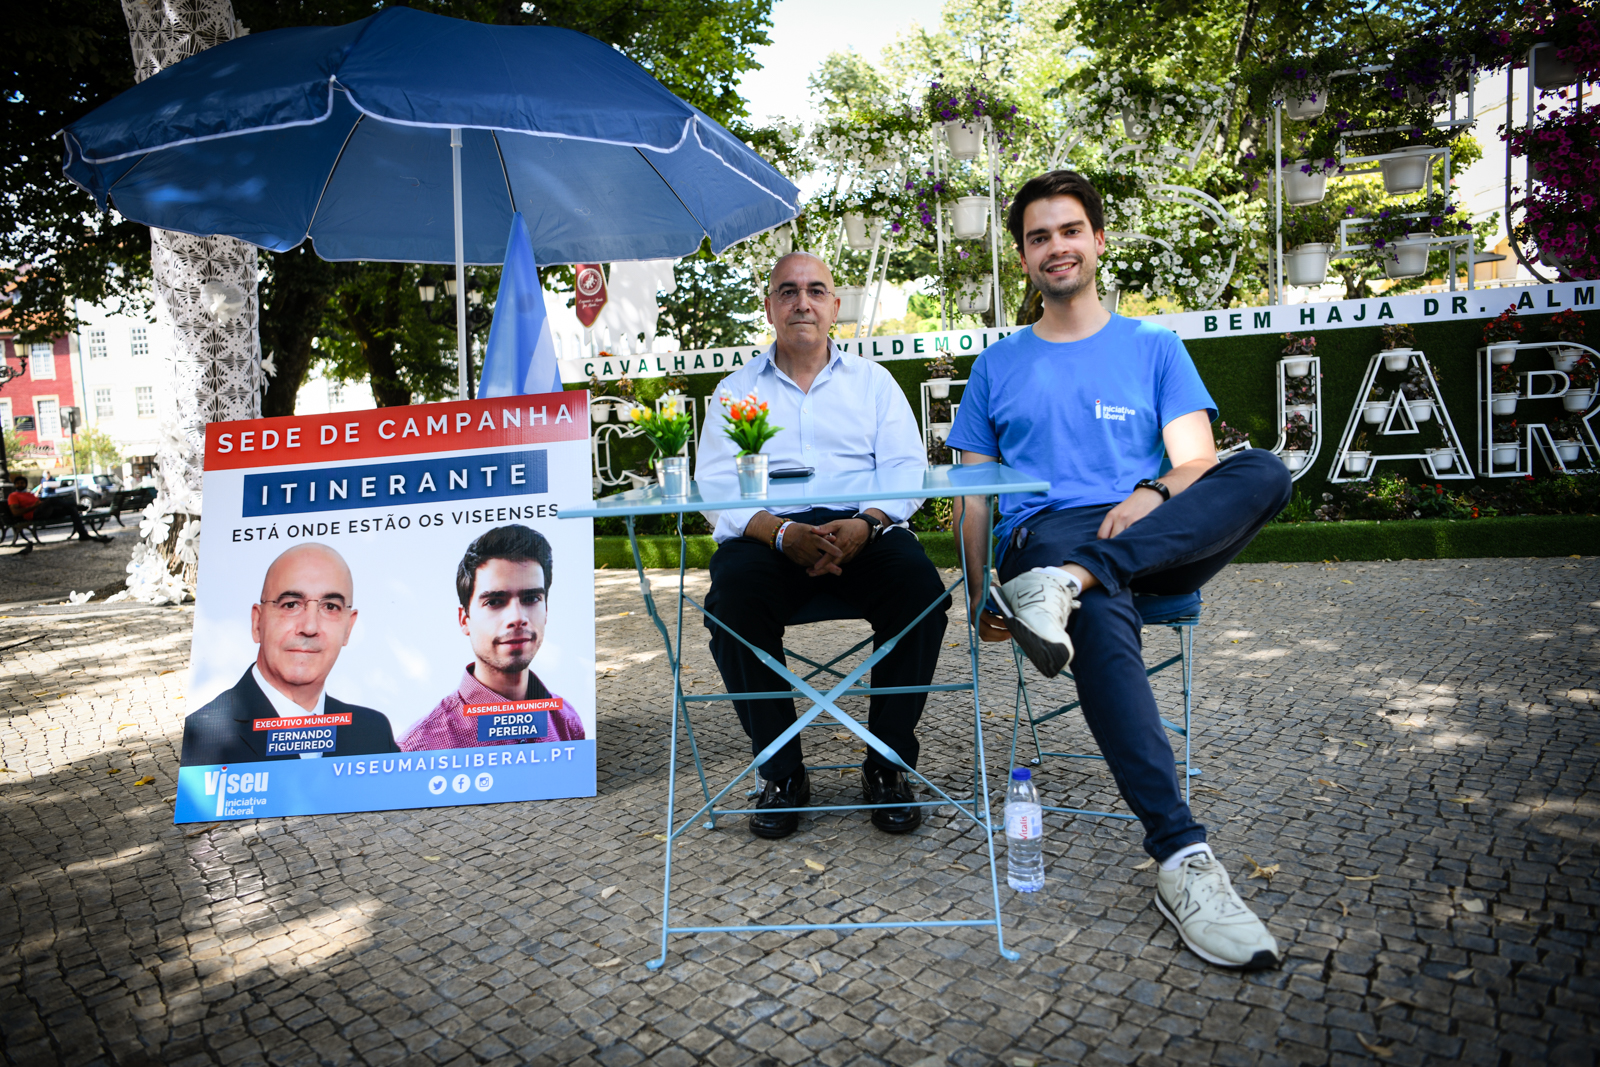 Fernando Figueiredo e Pedro Ferreira na apresentação da sede de campanha itinerante da iniciativa liberal